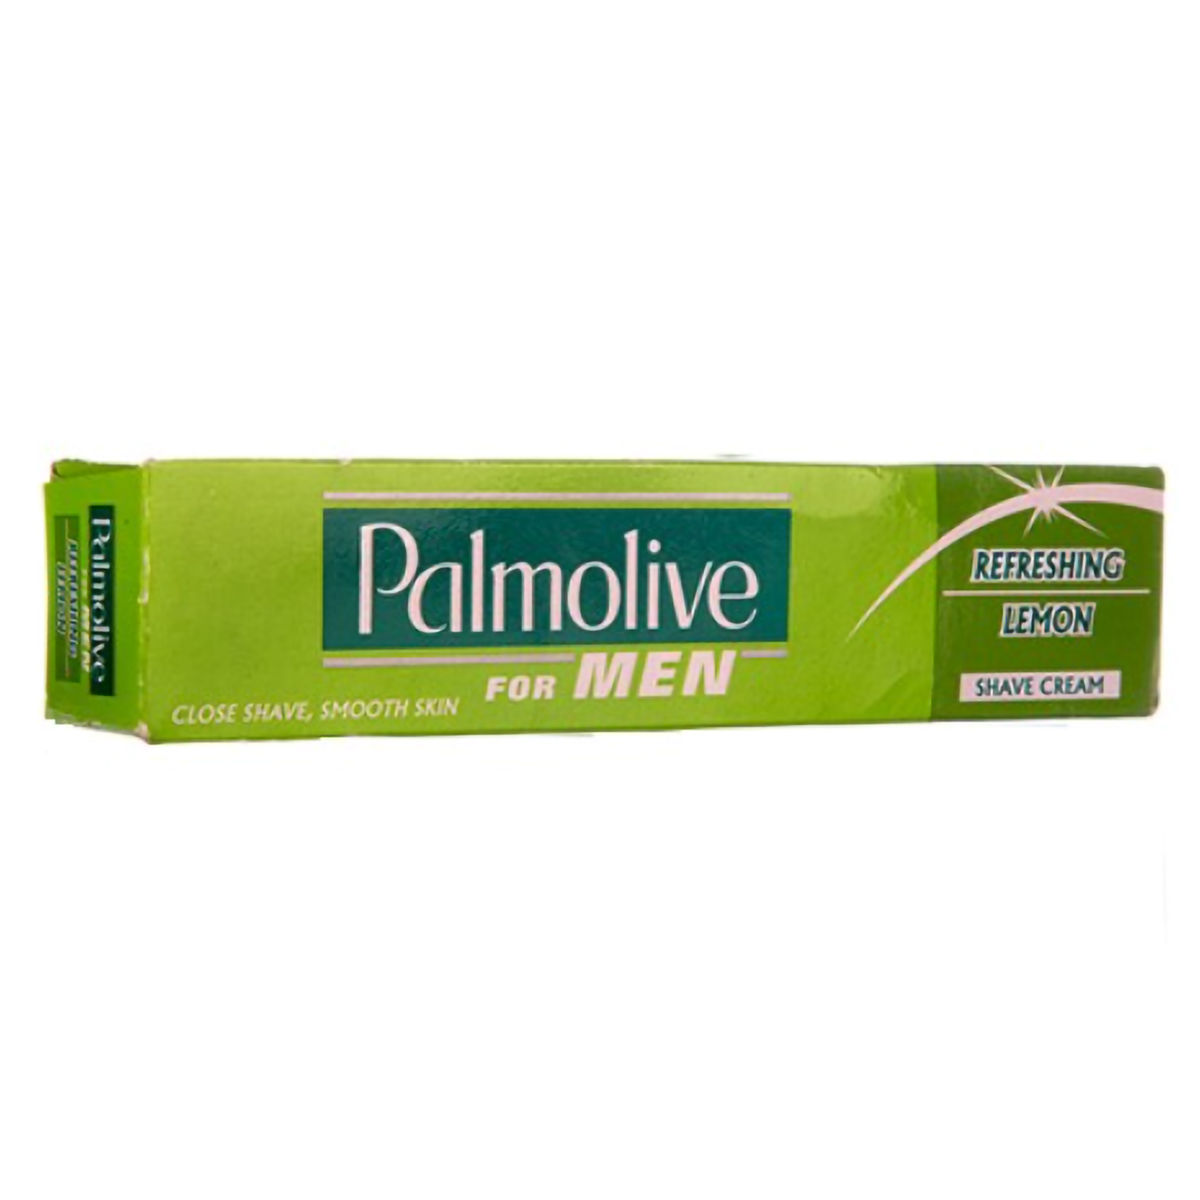 Buy Palmolive Lemon Shave Cream, 30 gm Online